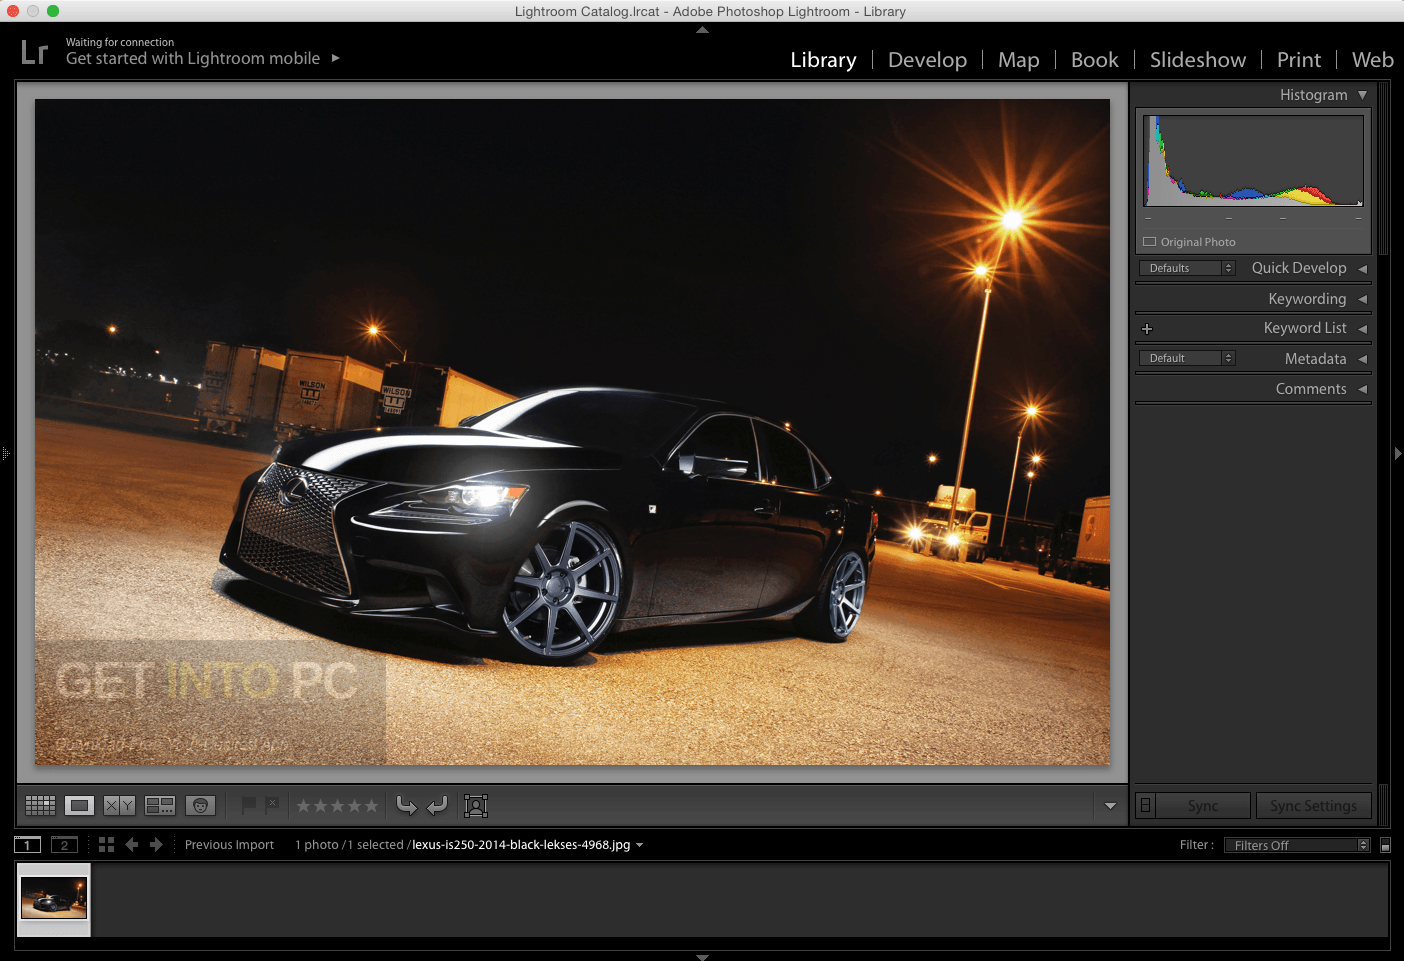 Adobe Photoshop Lightroom CC 6.12 Direct LInk Download